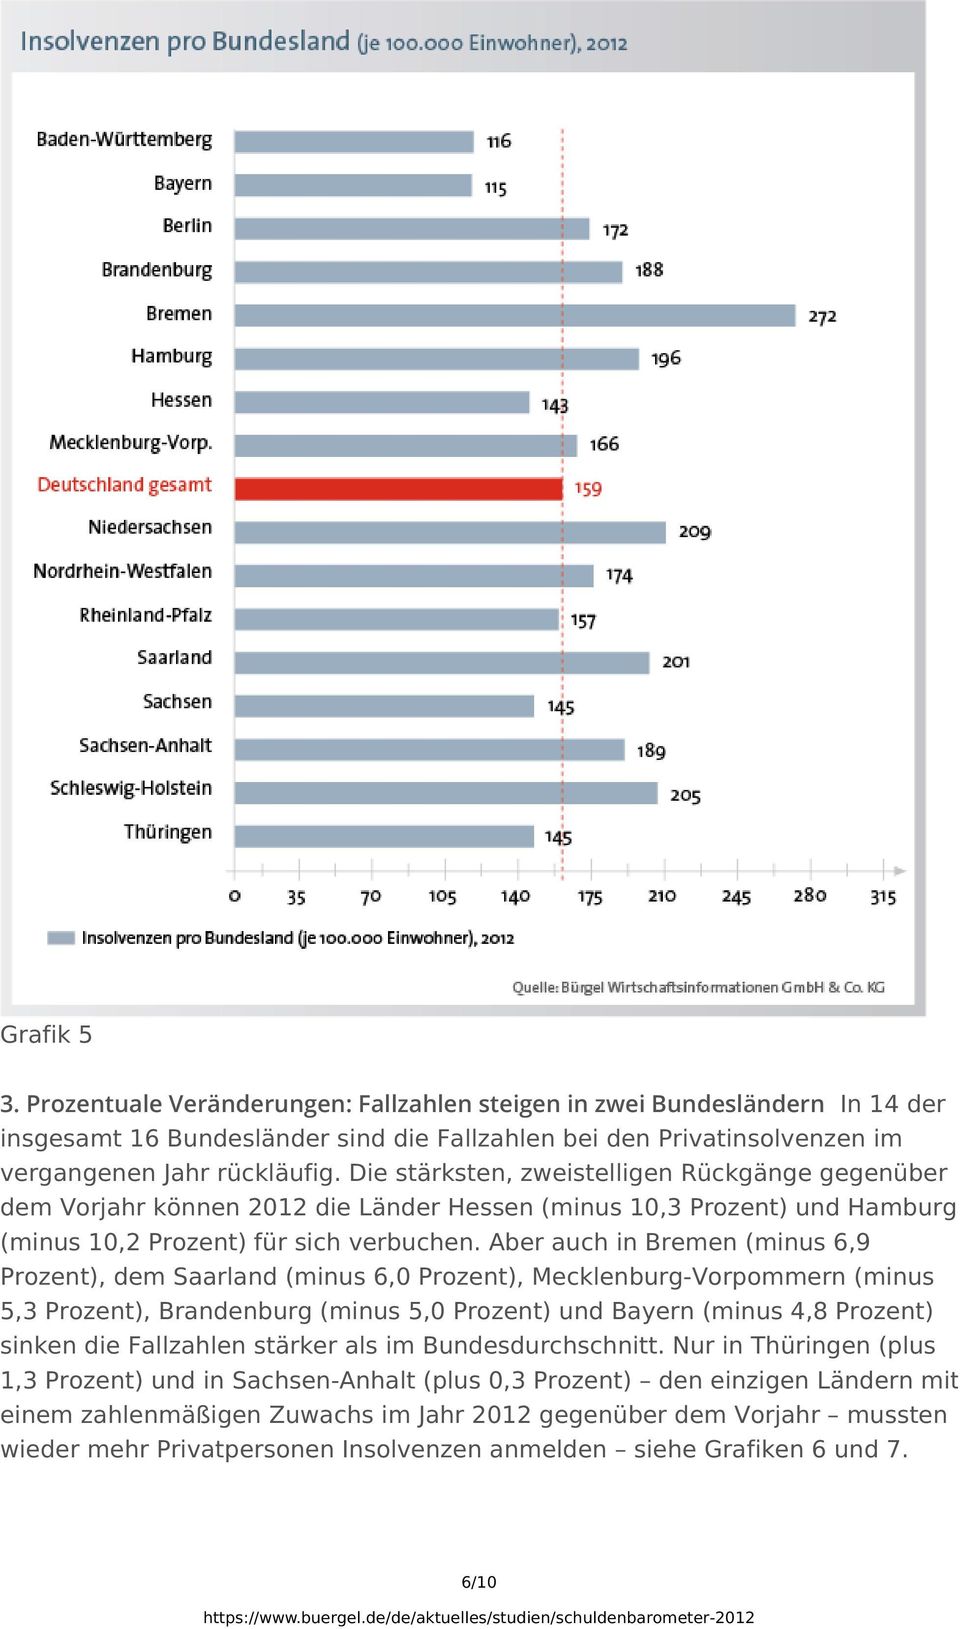 Aber auch in Bremen (minus 6,9 Prozent), dem Saarland (minus 6,0 Prozent), Mecklenburg-Vorpommern (minus 5,3 Prozent), Brandenburg (minus 5,0 Prozent) und Bayern (minus 4,8 Prozent) sinken die